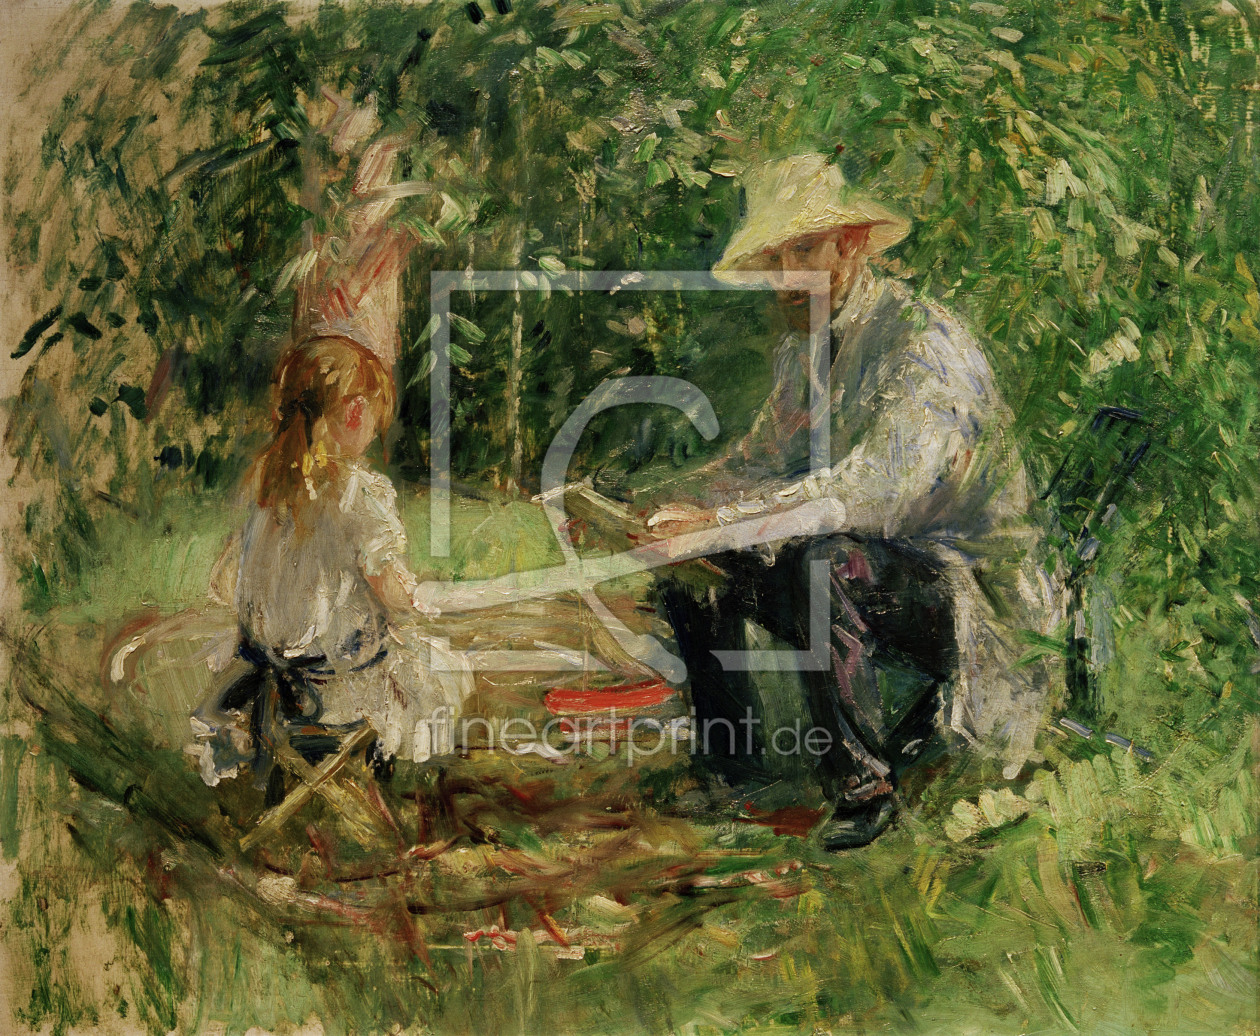 Bild-Nr.: 30005864 Morisot, EugÃ¨ne Manet and daughter erstellt von Morisot, Berthe